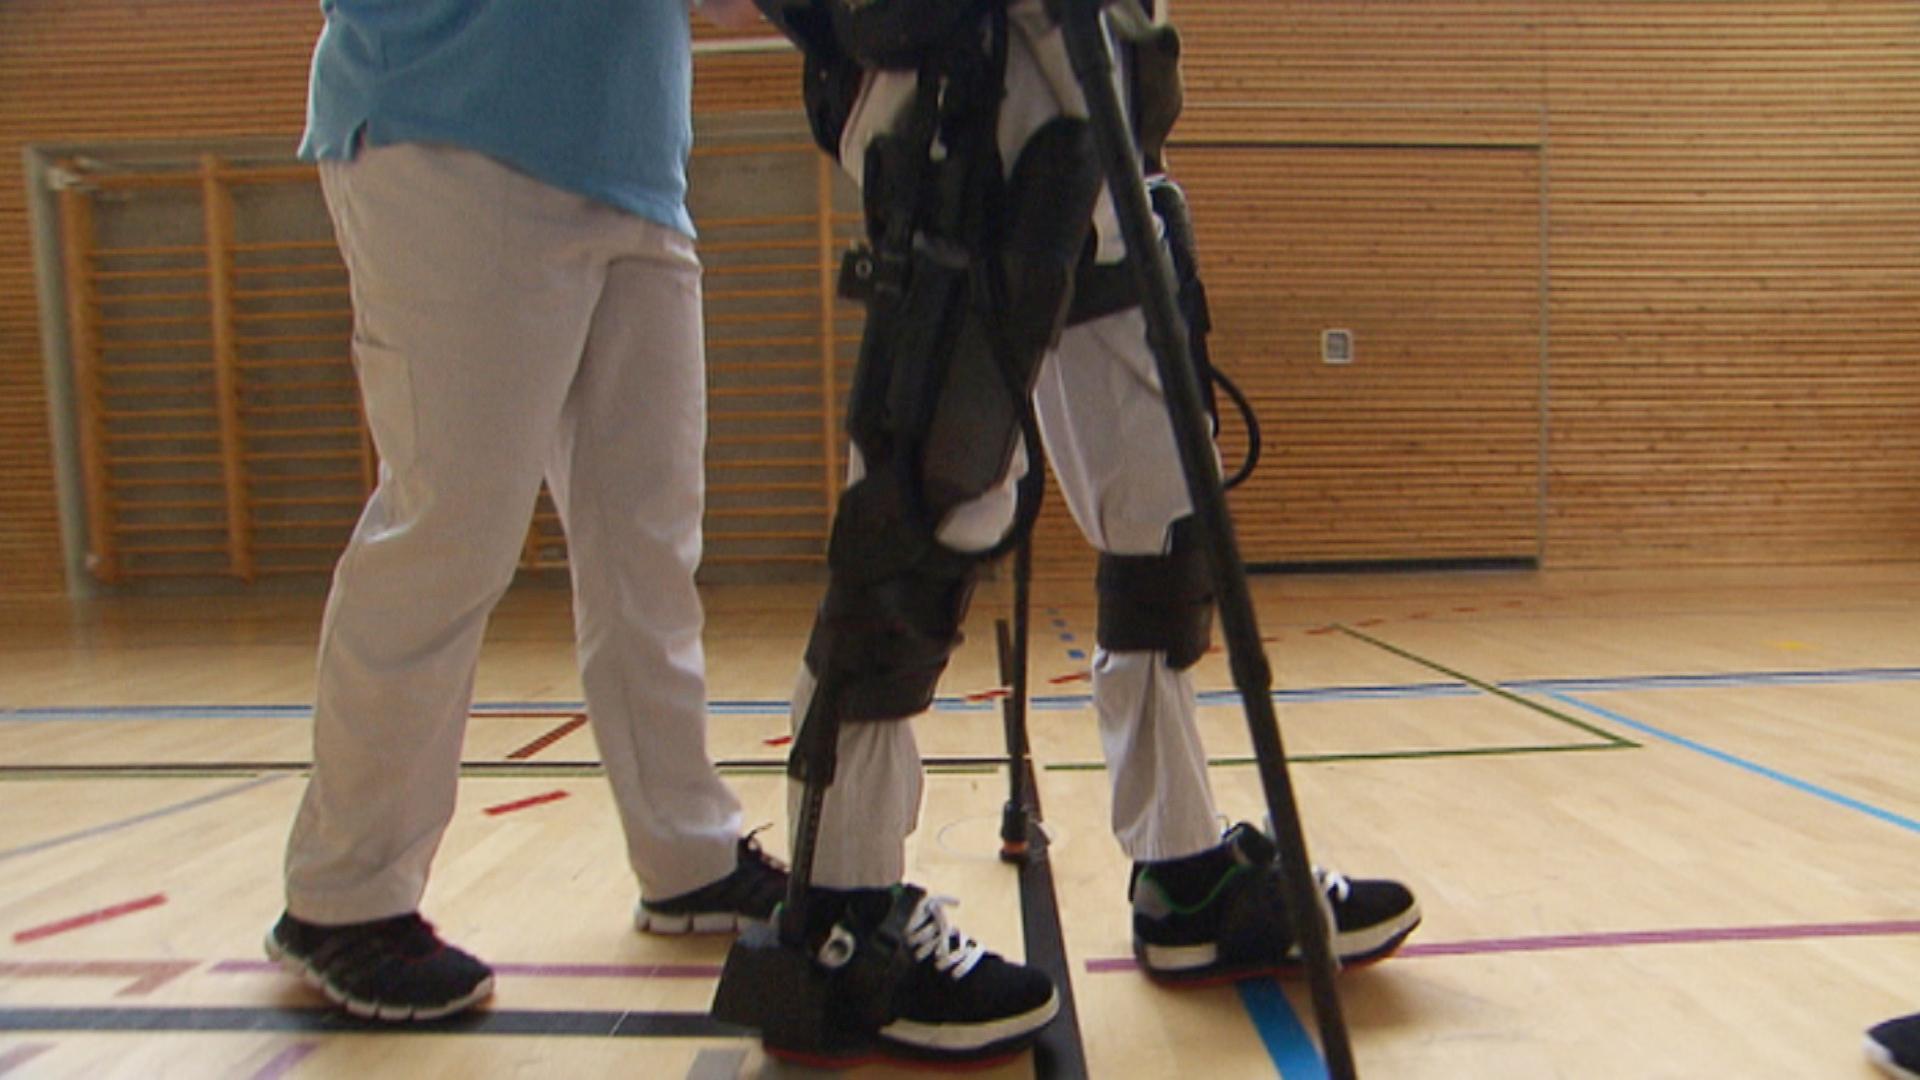 Exoskeleton for paraplegics